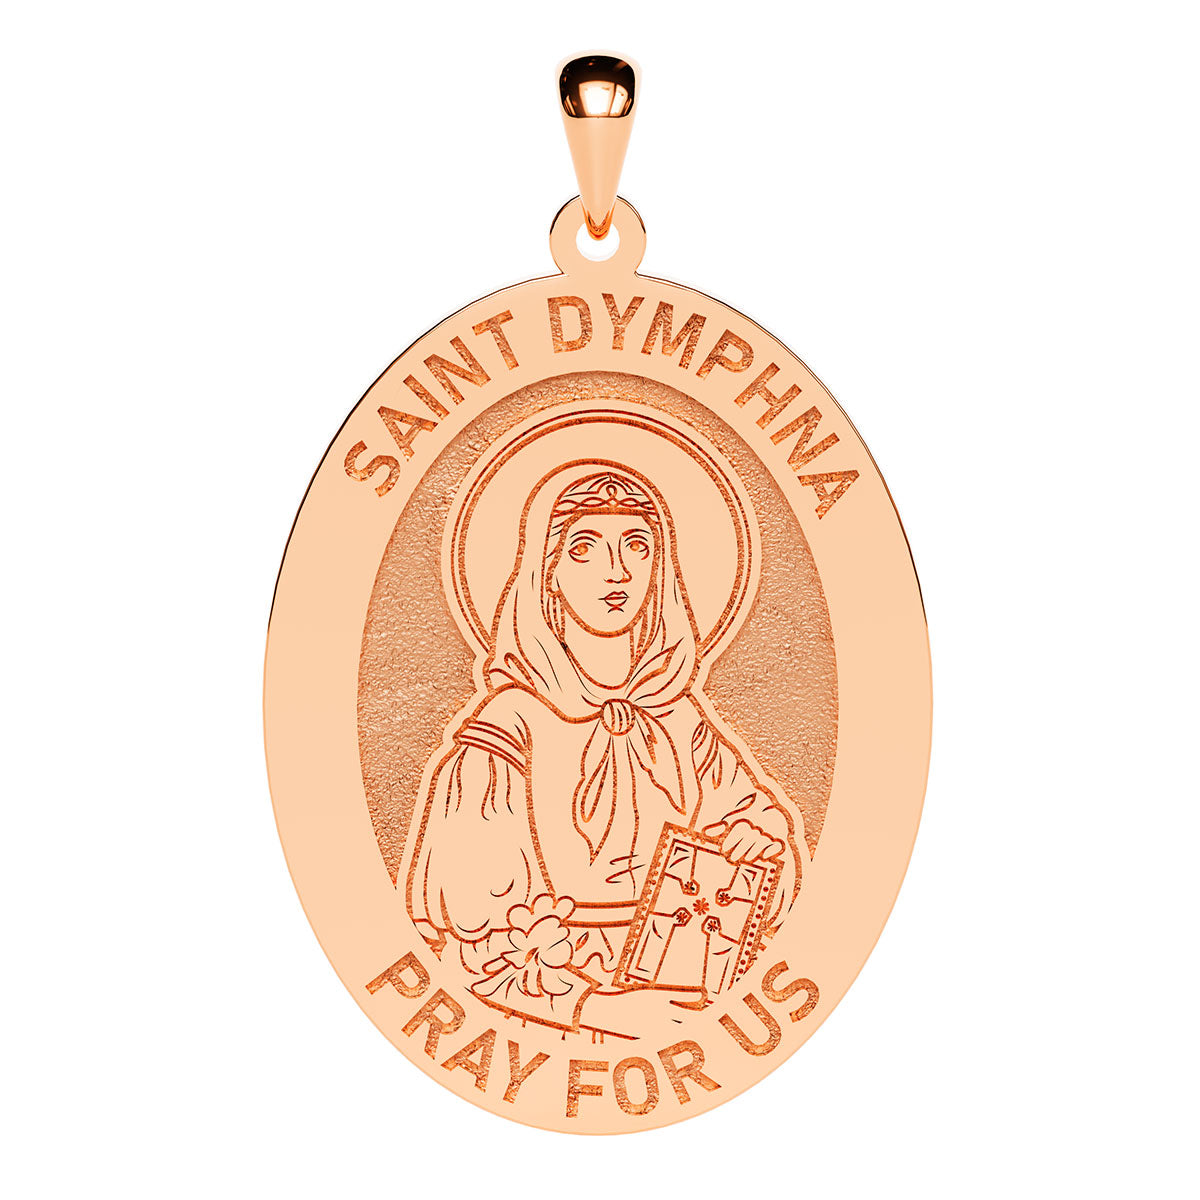 Saint Dymphna Oval Religious Medal